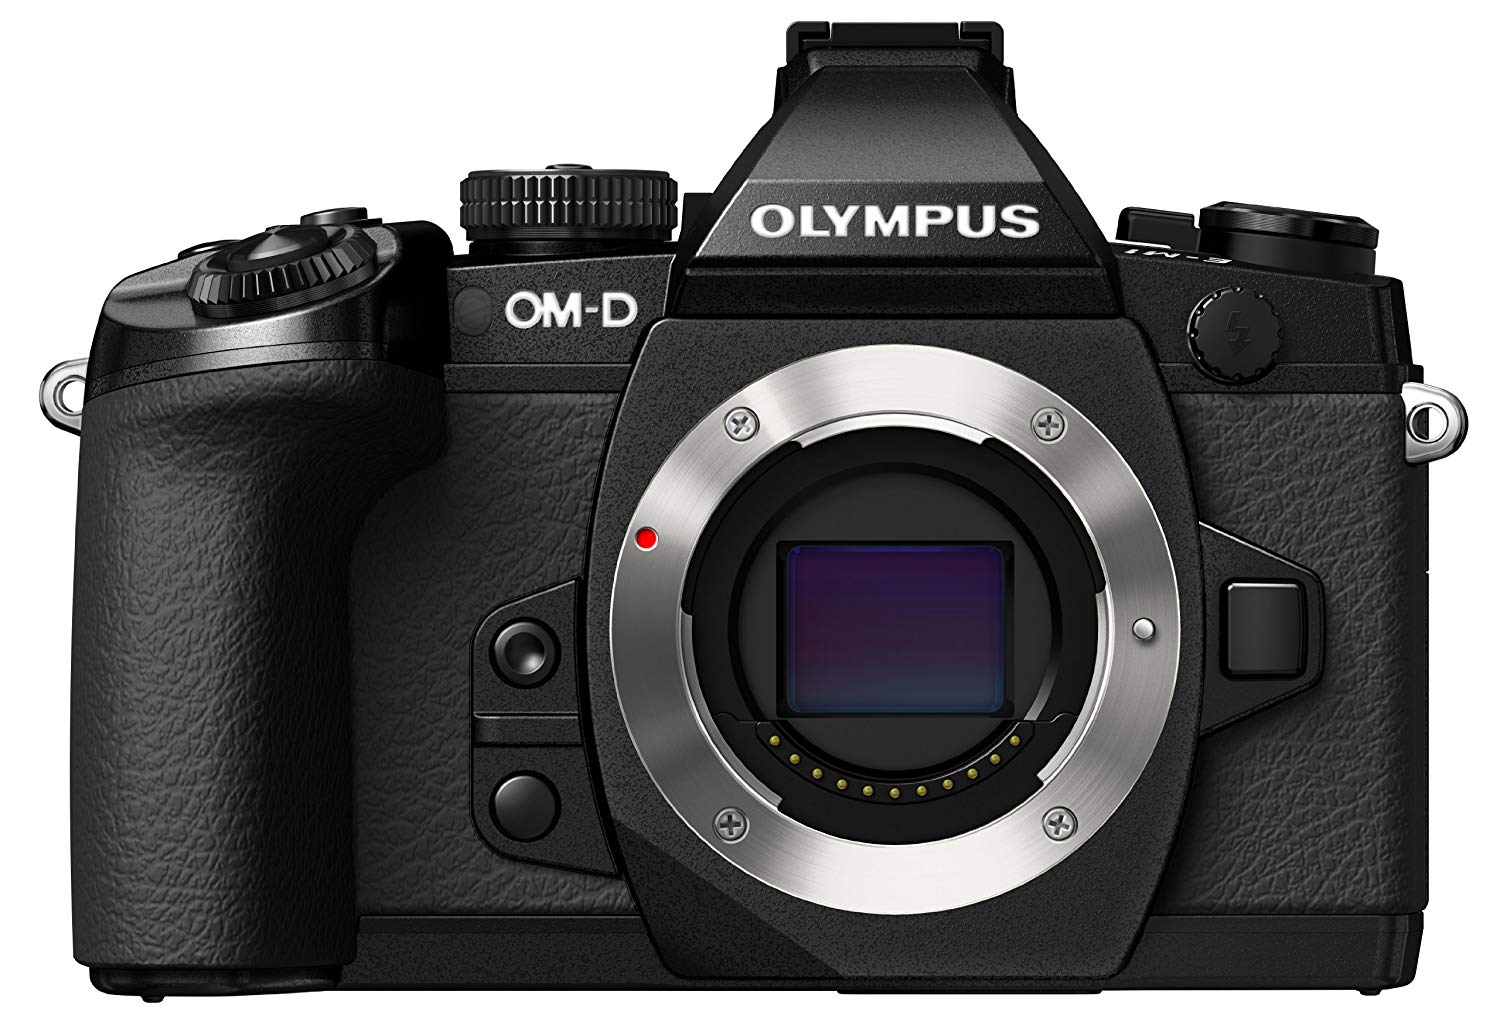 Olympus Appareil photo numérique sans miroir OM-D E-M1 avec 16 MP et écran LCD 3 pouces (boîtier uniquement) (noir)